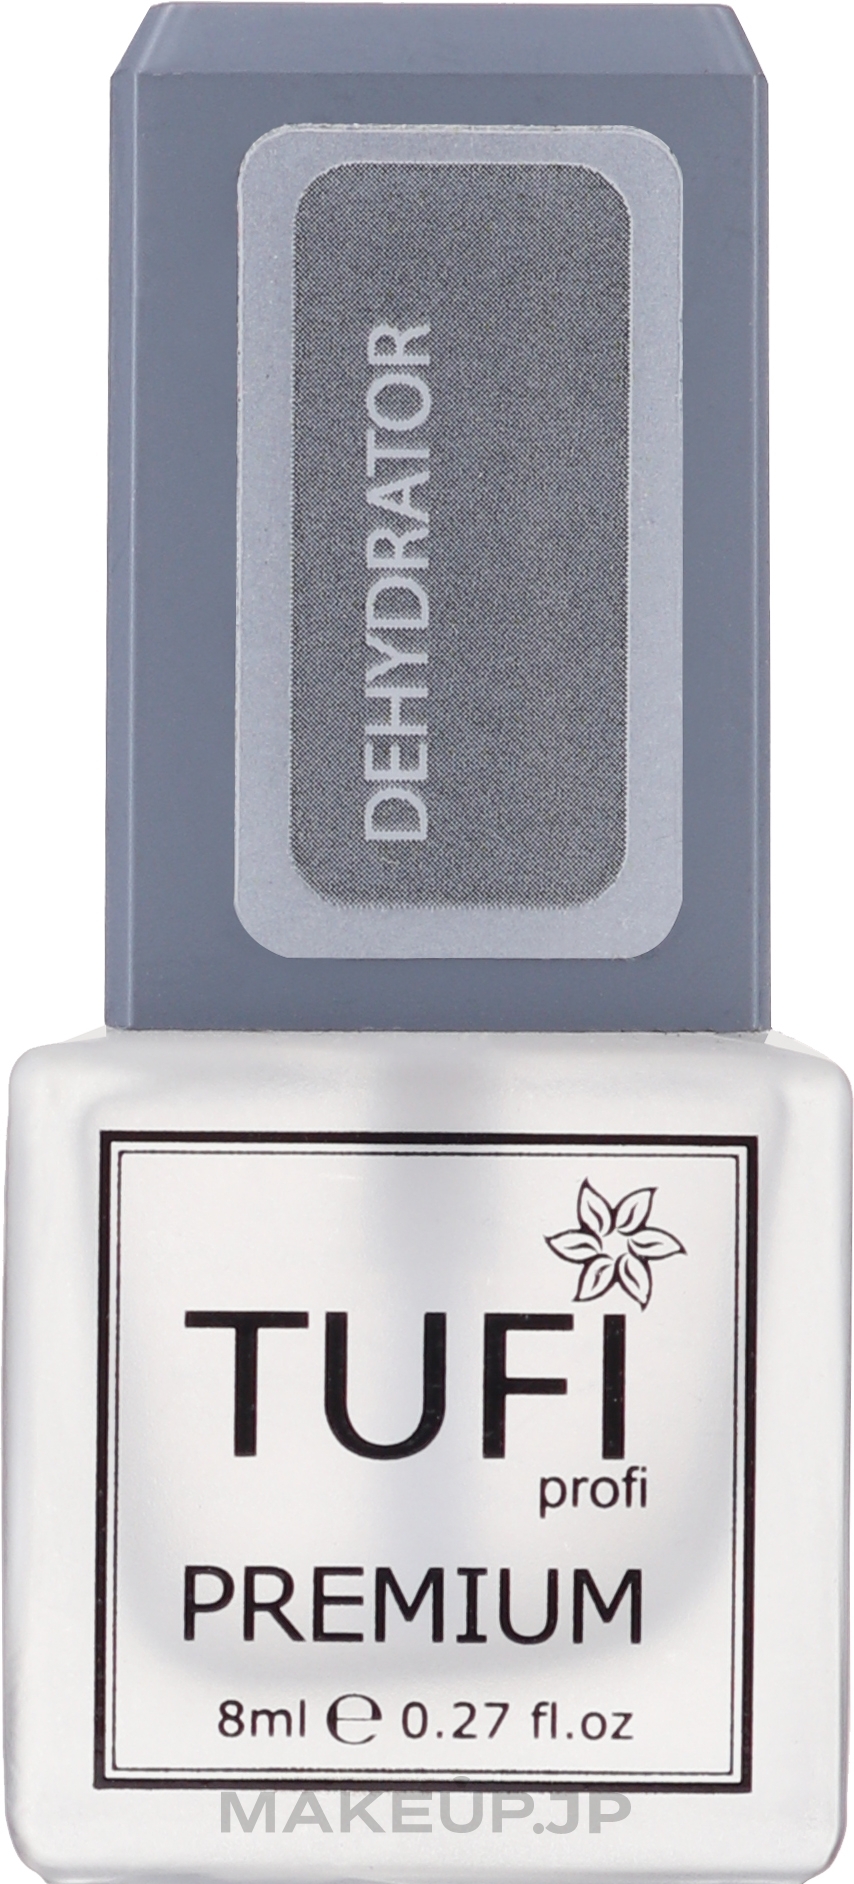 Nail Dehydrator - Tufi Profi Premium Dehydrator — photo 8 ml